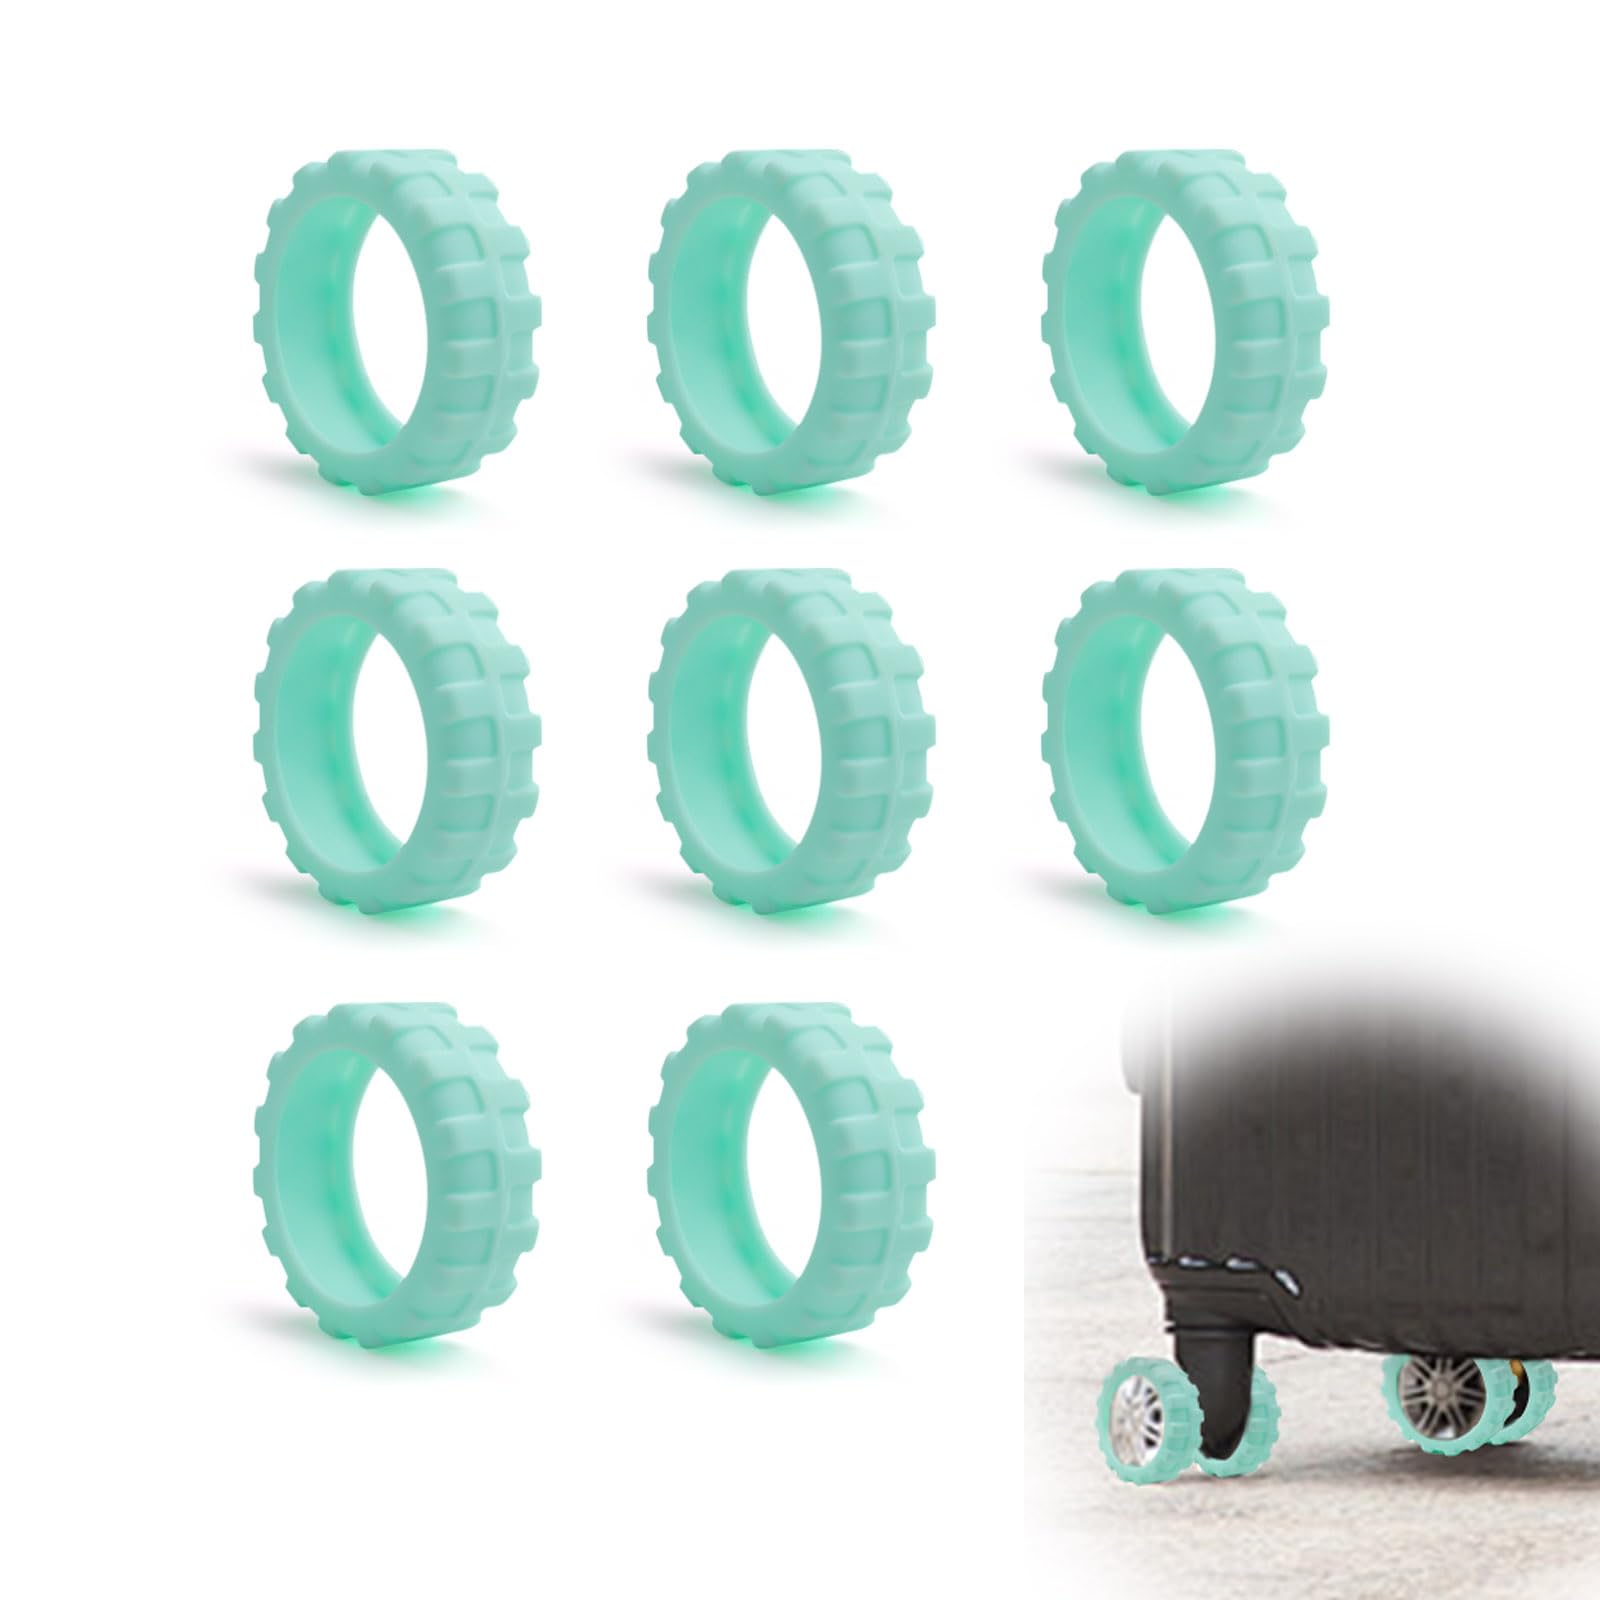 SPRHR 8 Stück Gepäckradschutz aus Silikon, Rutschfeste und Geräuschmindernde Luggage Wheel Cover mit 43 mm Durchmesser, Elastische Koffer Radabdeckungen zum Schutz von Gepäckrädern (Minzgrün) von SPRHR